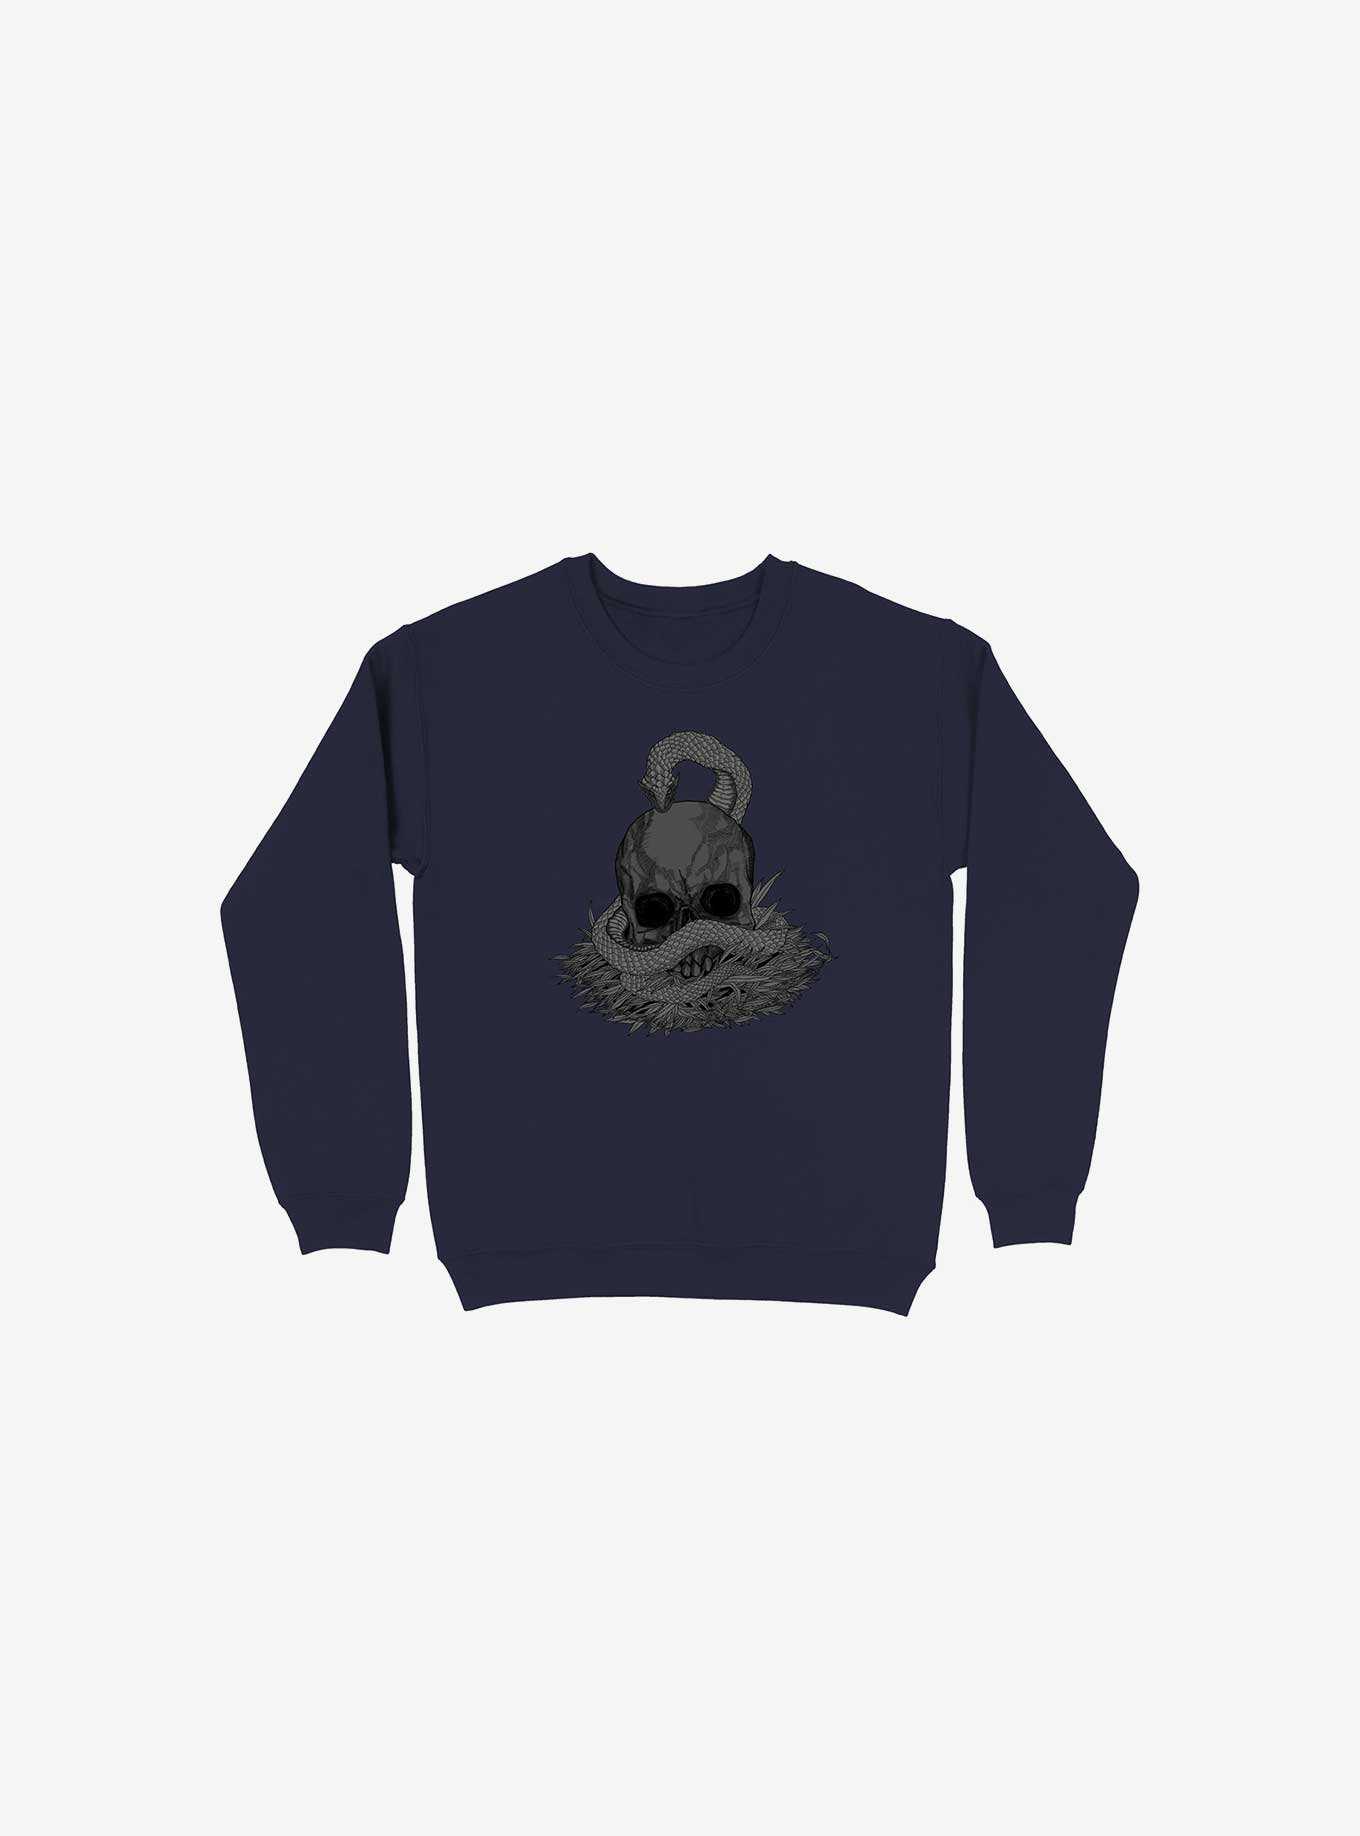 Snake & Skull Navy Blue Sweatshirt, , hi-res